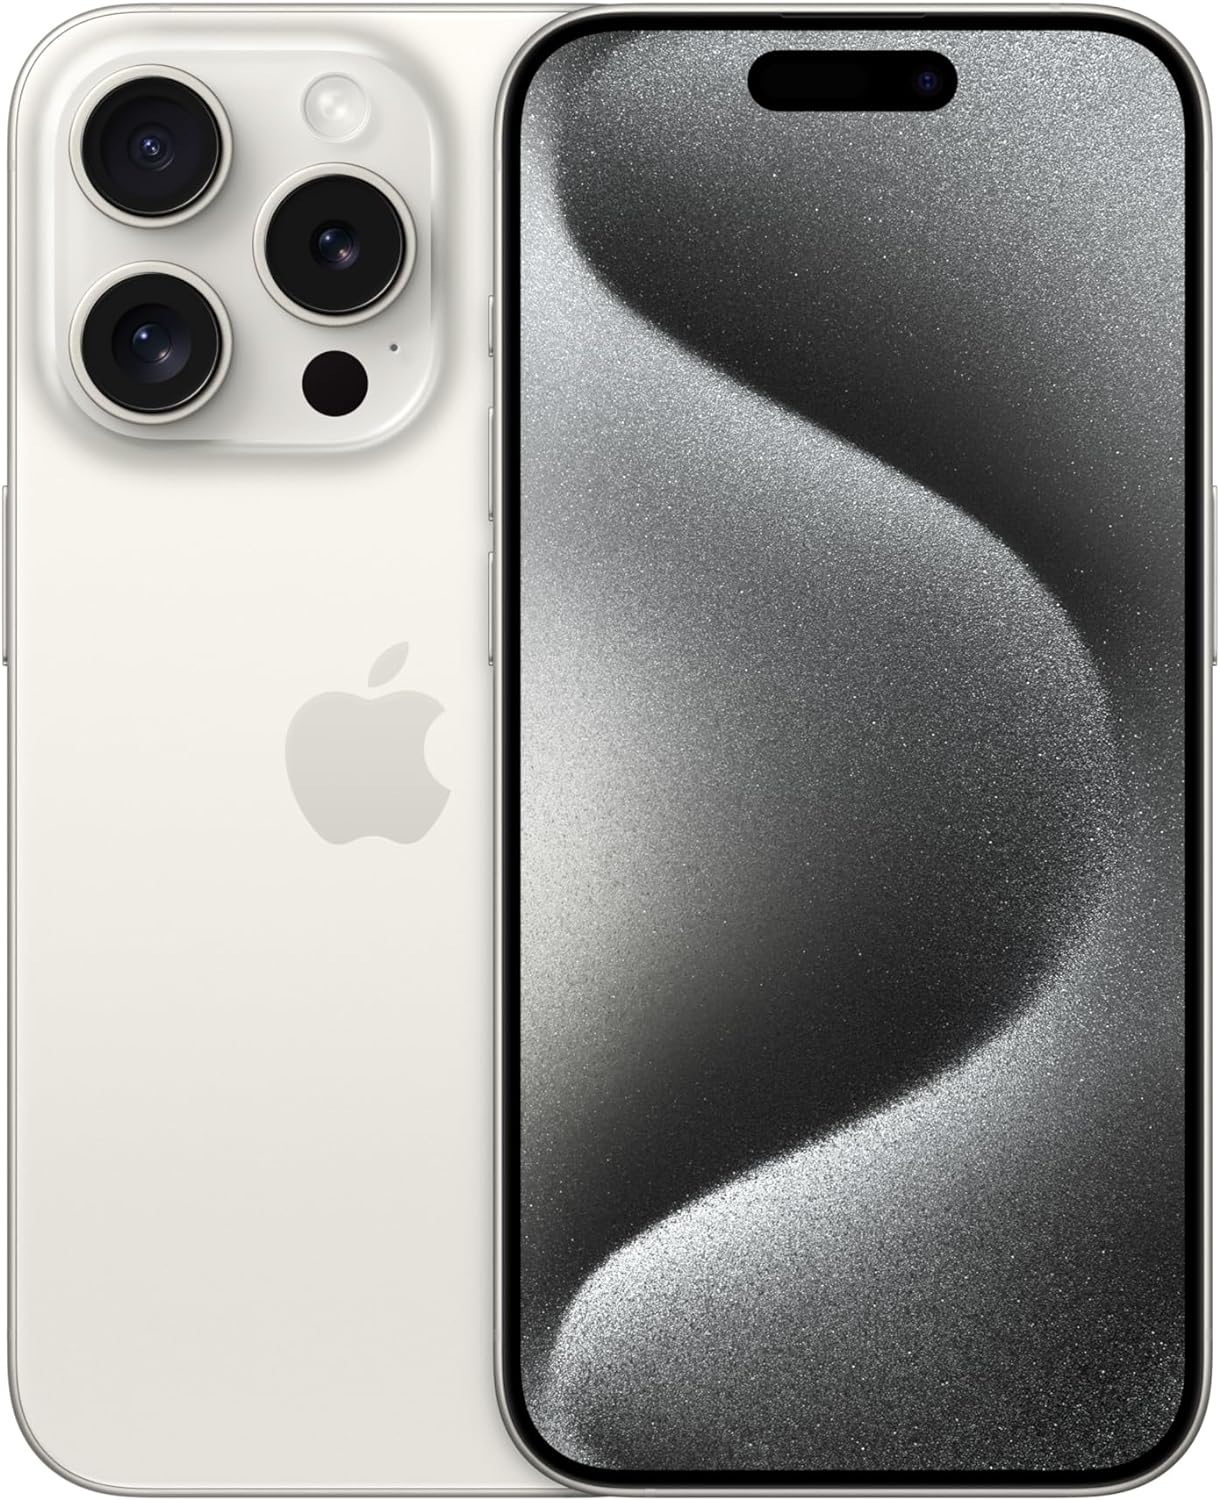 iPhone 15 Pro (128 GB) - White Titanium, forged in aerospace-grade titanium with Ceramic Shield front. 0195949018596